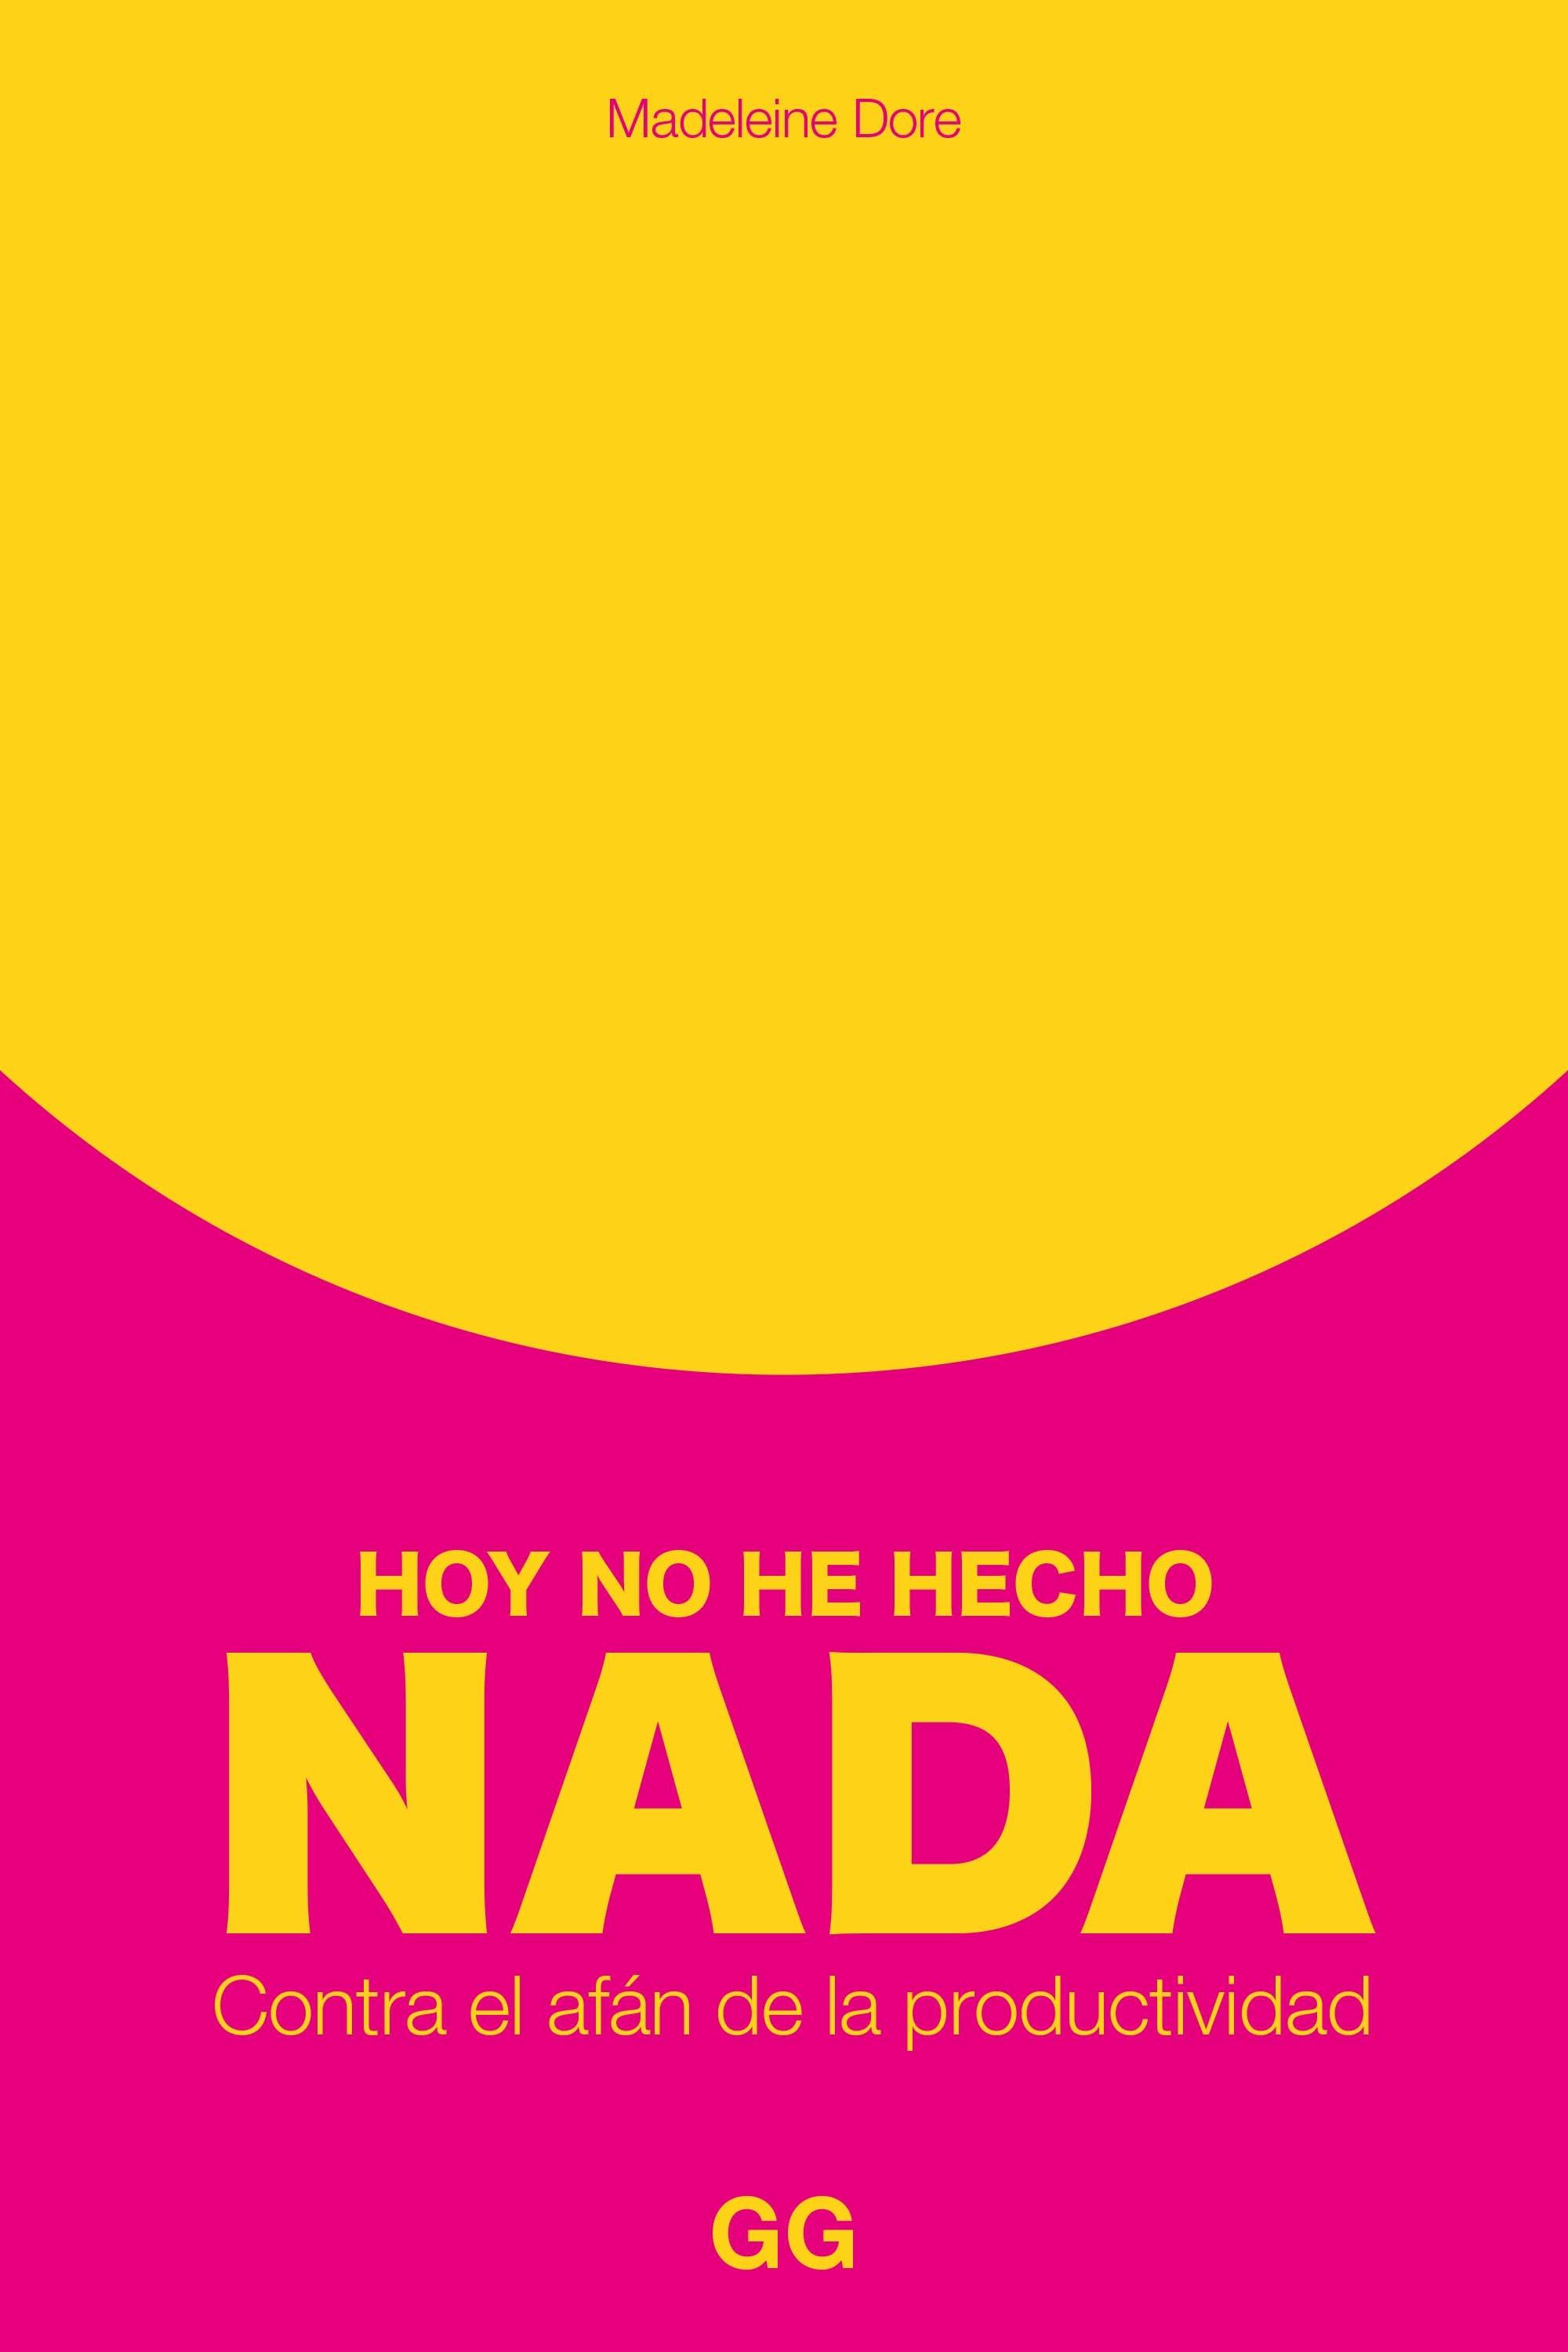 HOY NO HE HECHO NADA "CONTRA EL AFÁN DE PRODUCTIVIDAD"